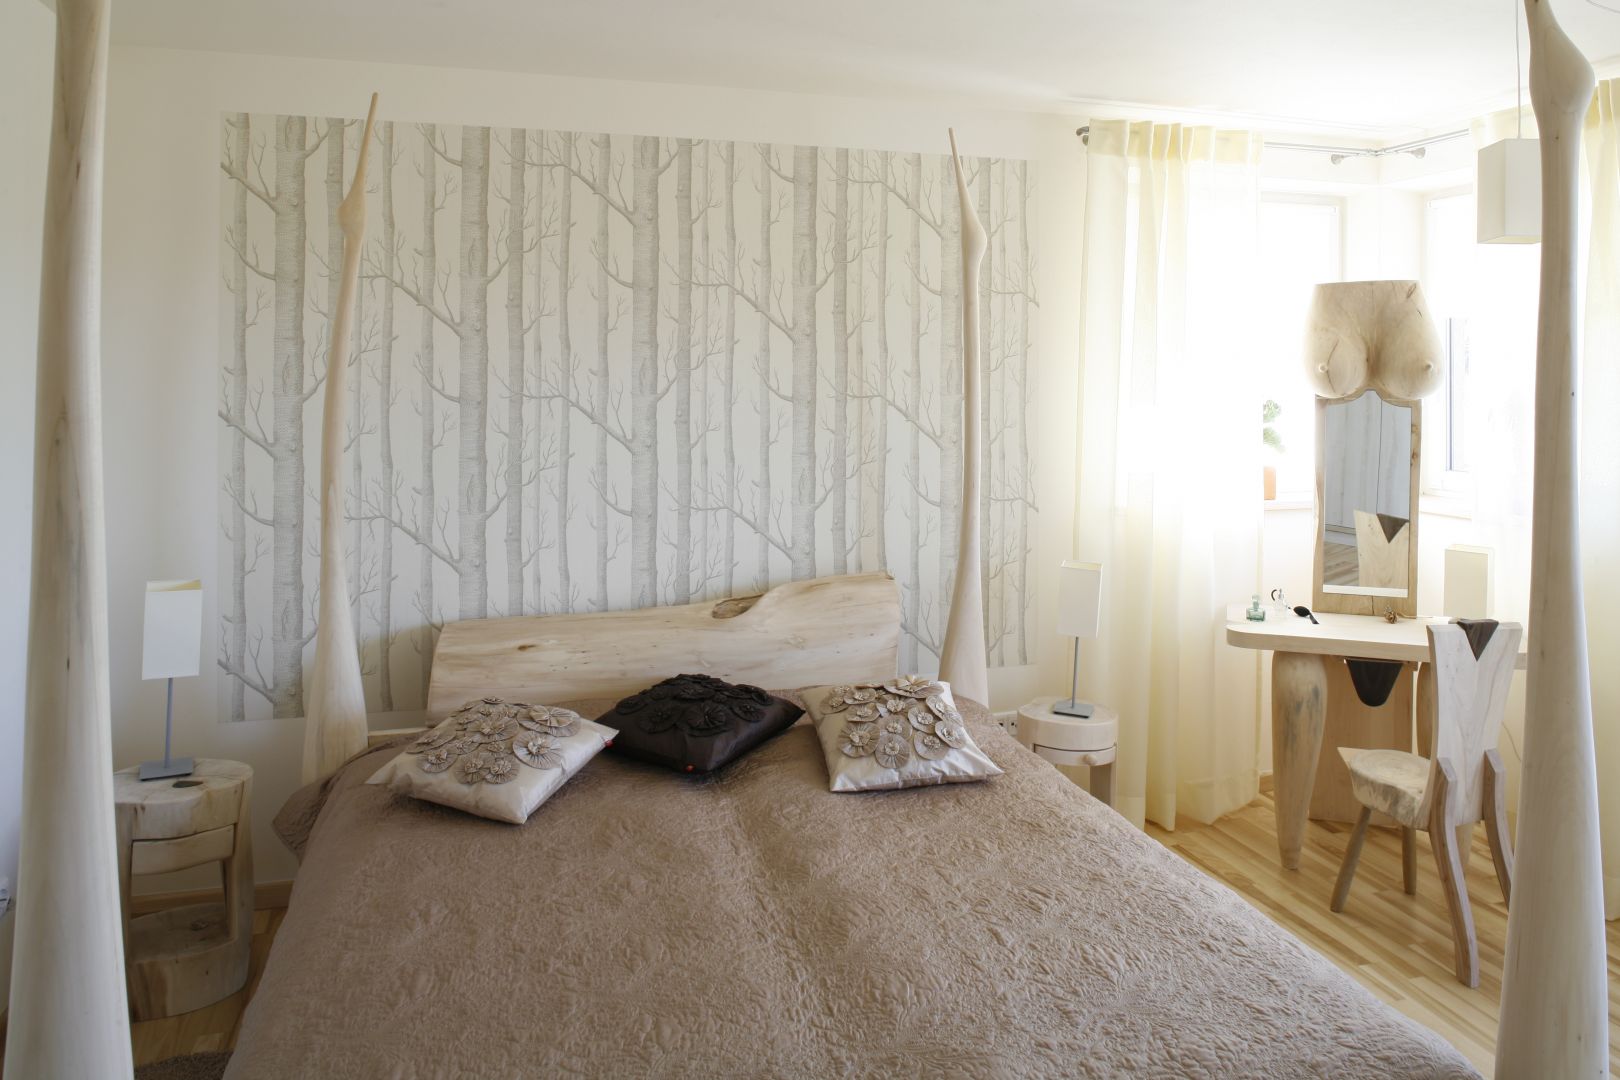 Naturalne, jasne kolory są doskonałym rozwiązaniem do małej sypialni. Warto zadbać również o dużą ilość naturalnego światła, np. wieszając prześwitujące firany. Projekt: Marta Kruk. Fot. Bartosz Jarosz